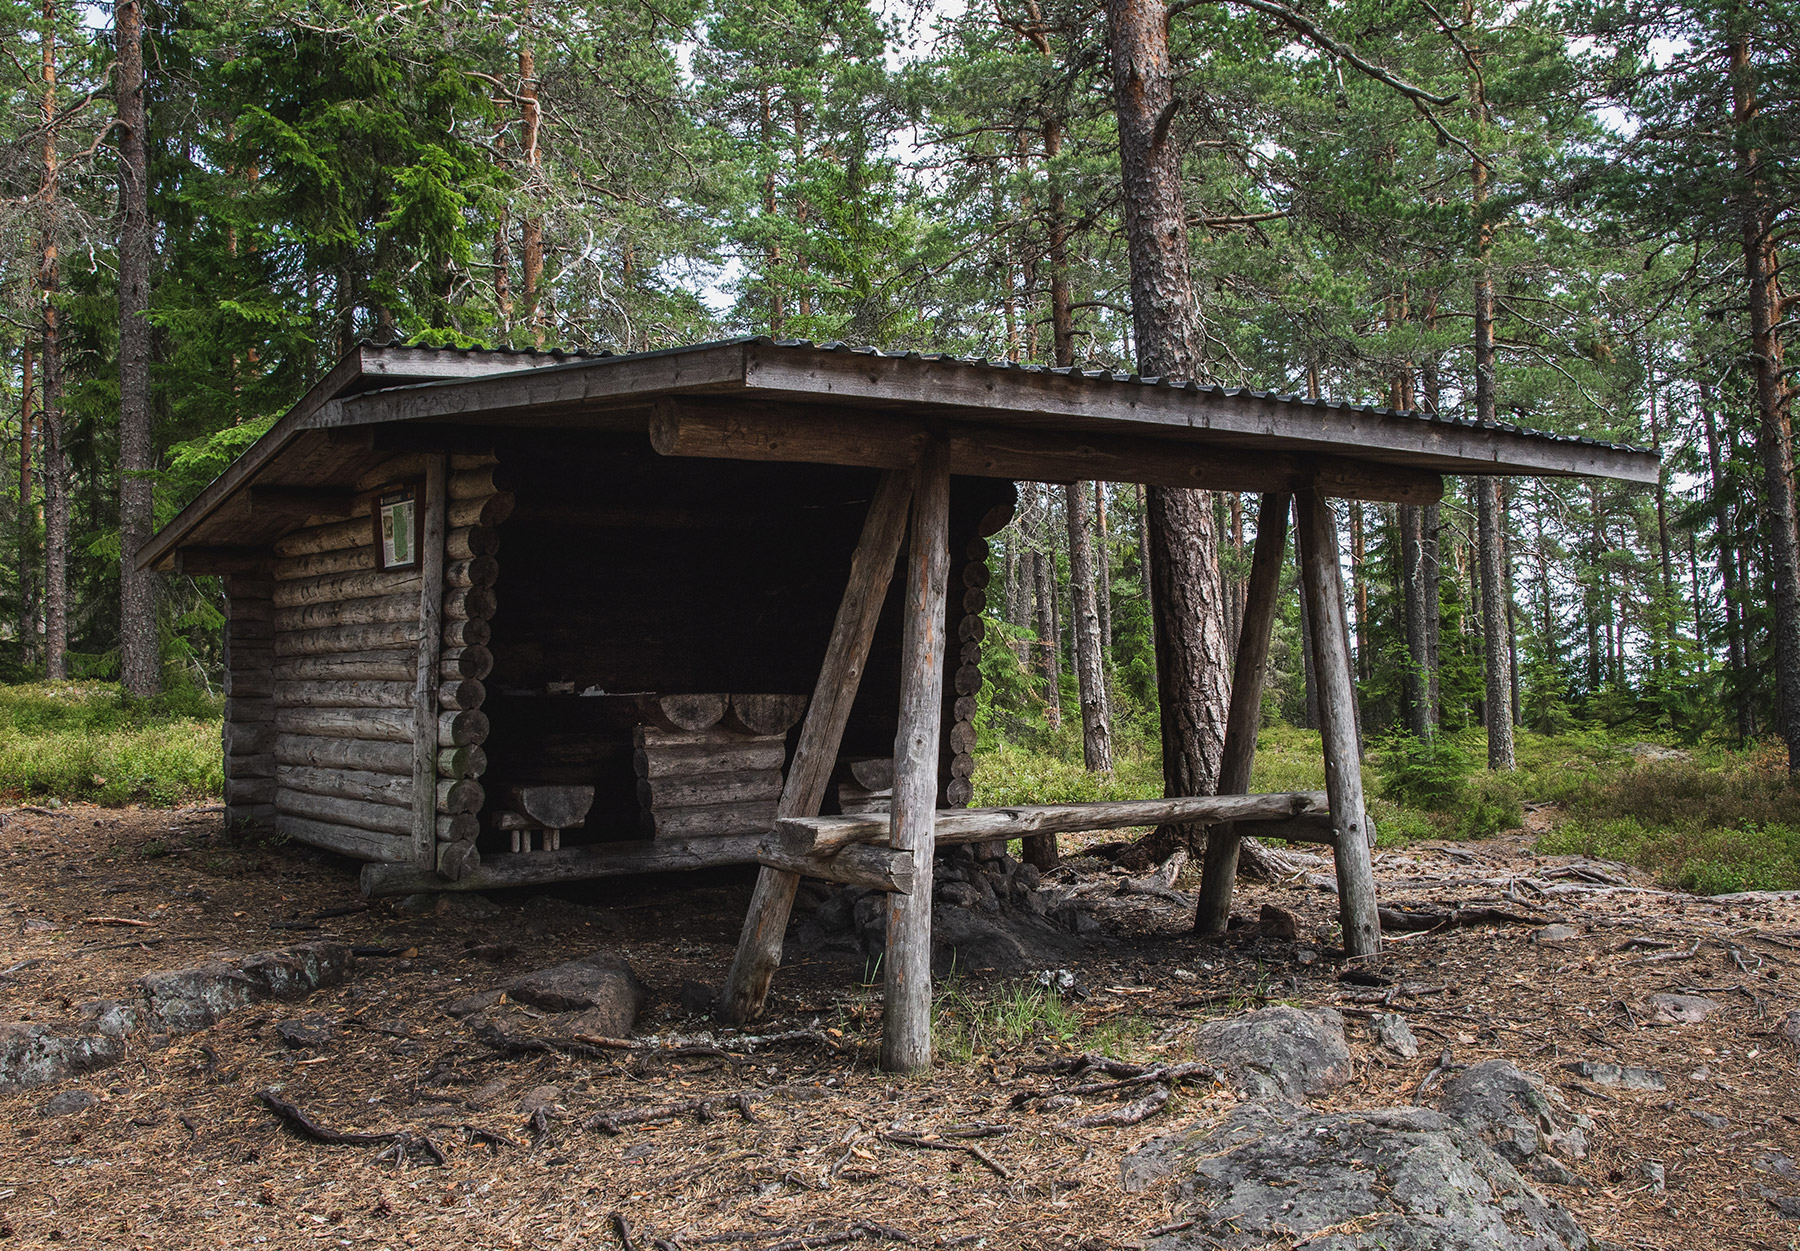 Rustic wooden cabin